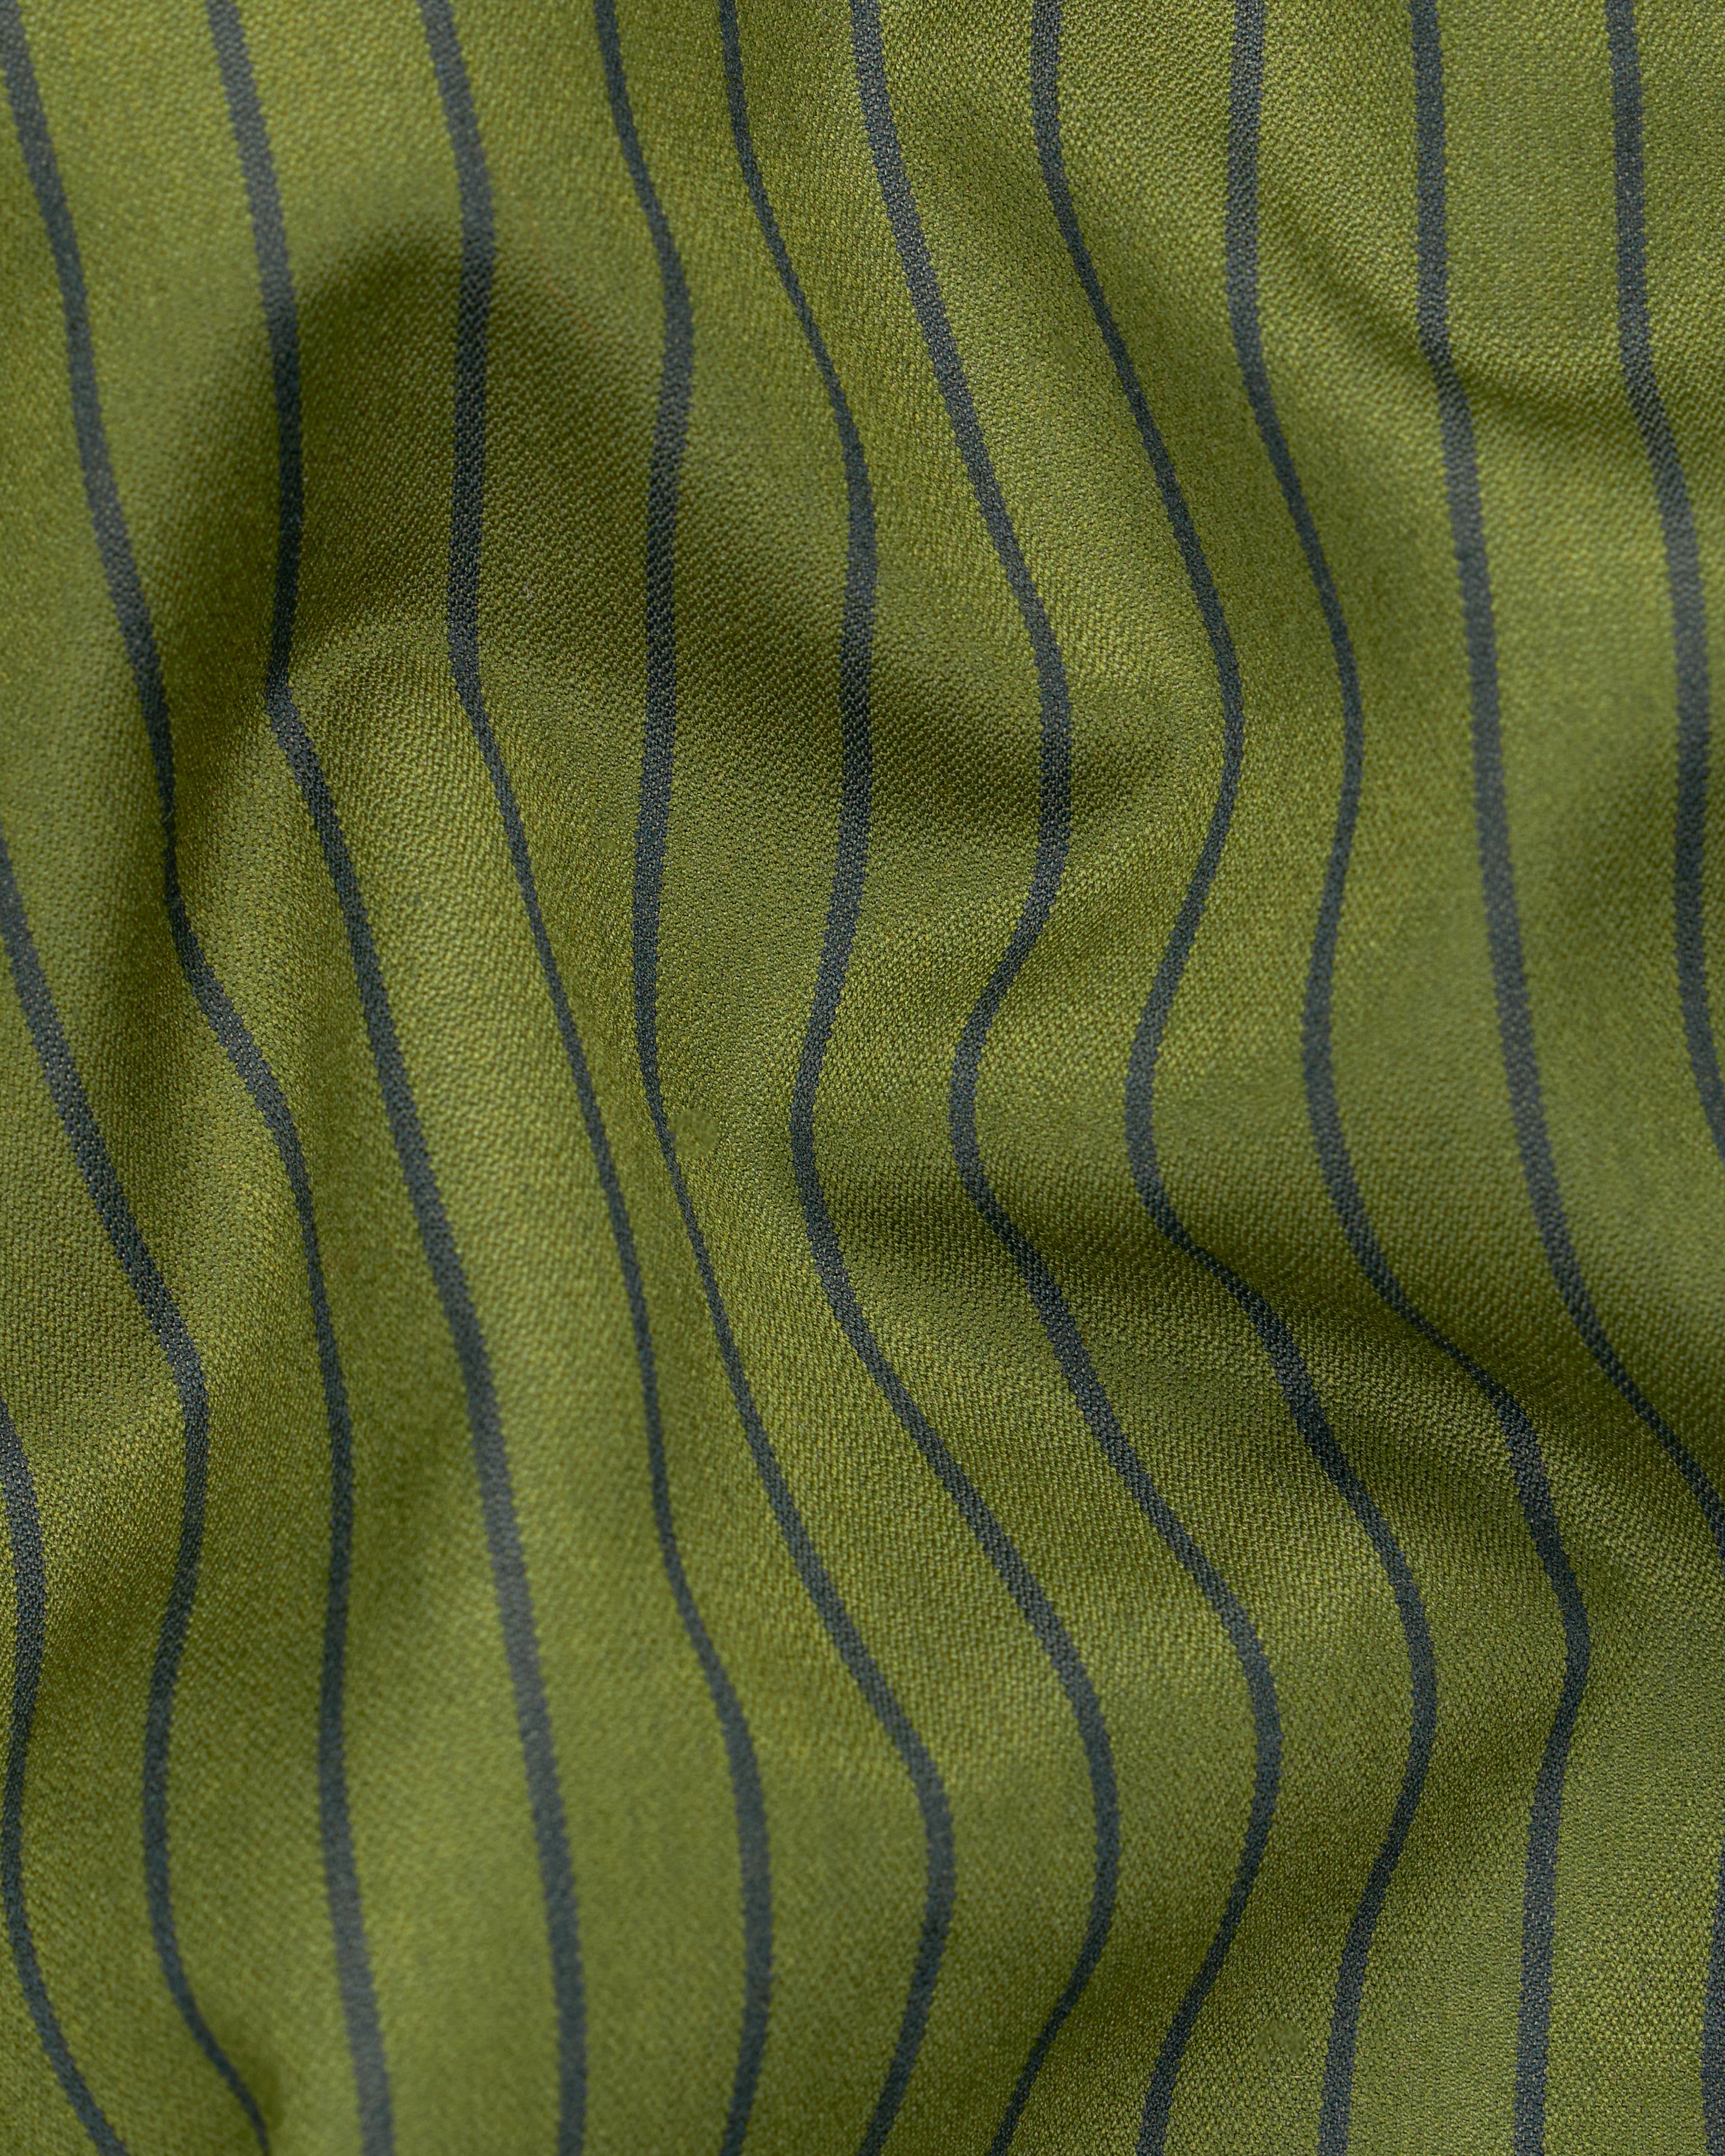 Hemlock Green Striped Pant T2705-28, T2705-30, T2705-32, T2705-34, T2705-36, T2705-38, T2705-40, T2705-42, T2705-44